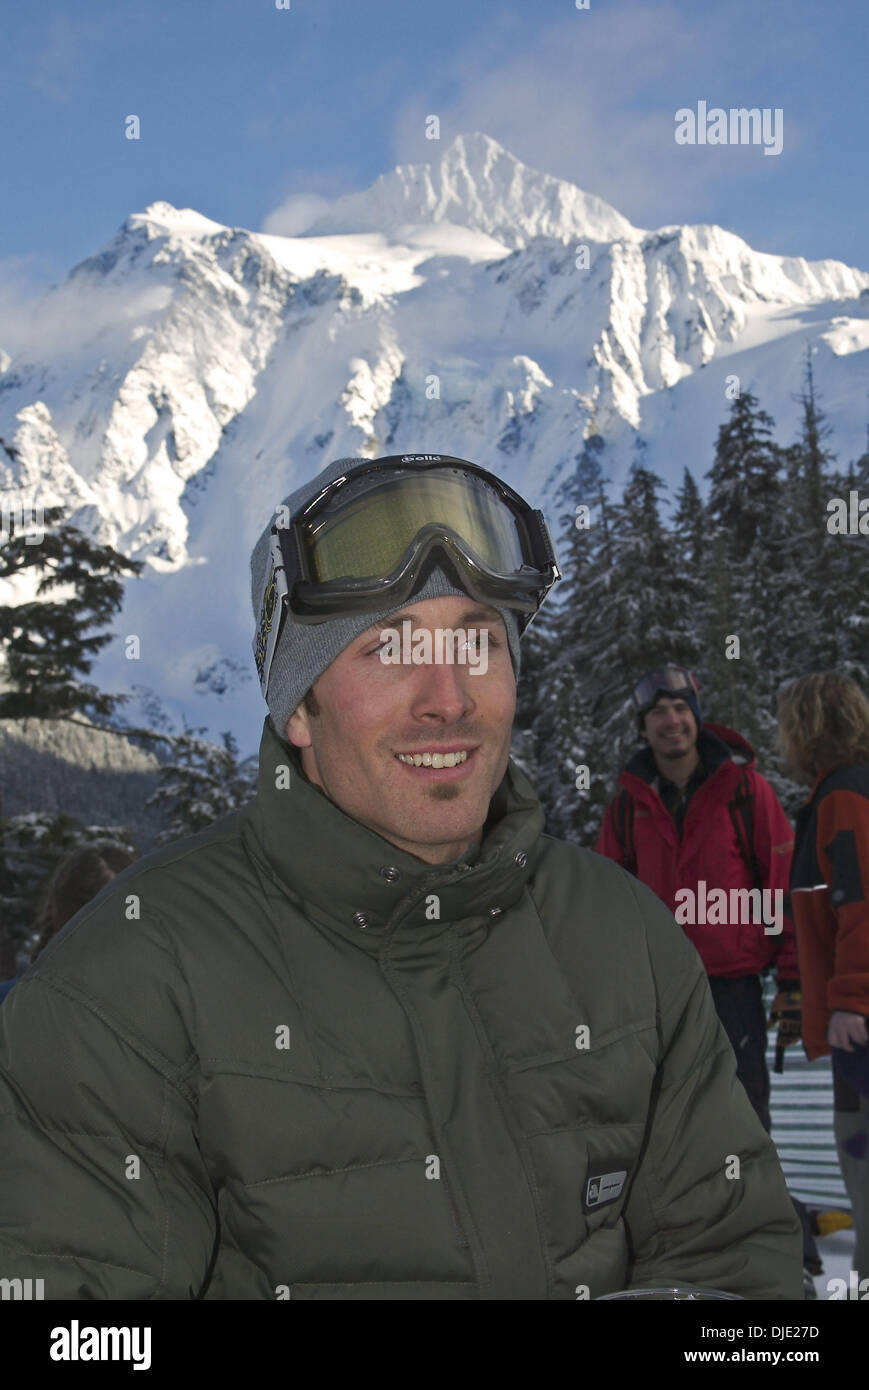 Feb 08, 2004; Mt. Baker, WA, Stati Uniti d'America; visto qui, sempre prima la Medaglia d'oro in snowboard cross USA i membri del team SETH WESCOTT al ventesimo annuale di Mt. Baker Bank di slalom. L'evento attira piloti provenienti da tutto il mondo, tutti in lizza per l'ambita ''Golden il nastro del condotto Award.'' noto come una delle principali case di snowboard Mt Baker ha prodotto tali leggende come il compianto Craig Kell Foto Stock